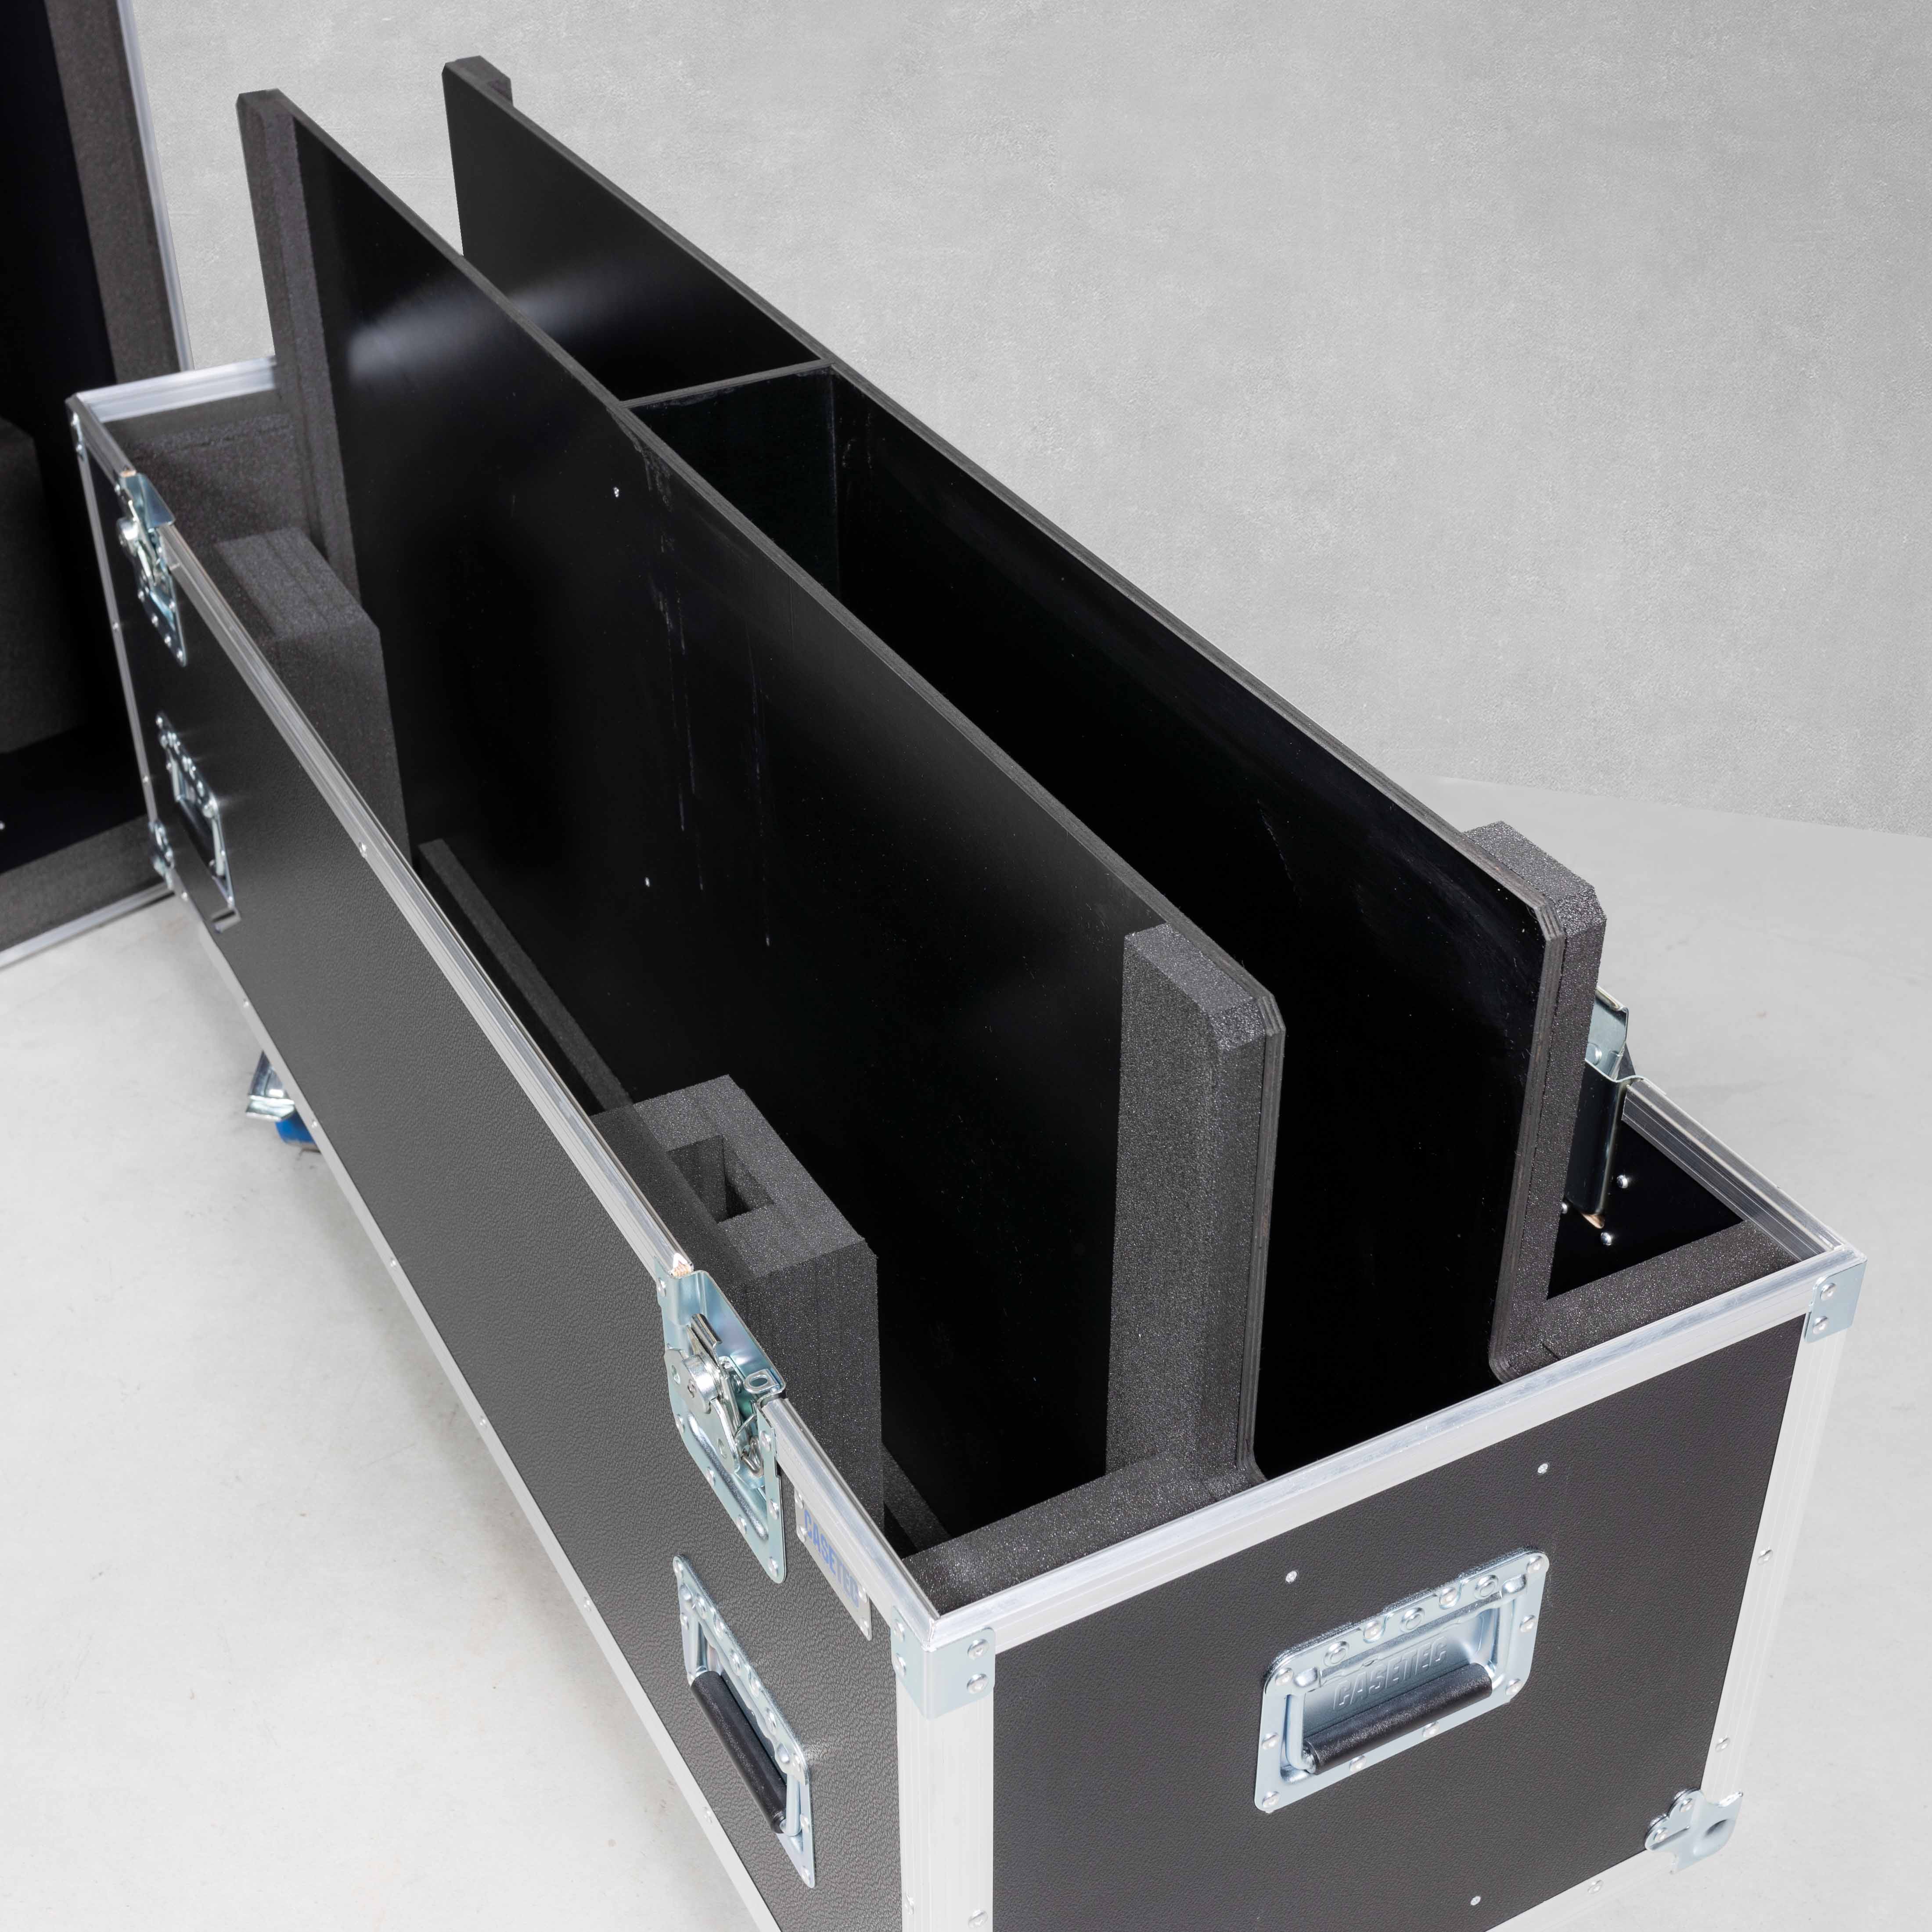 Flightcase für zwei Flachbildschirme 55" mit Zubehörfach mittig